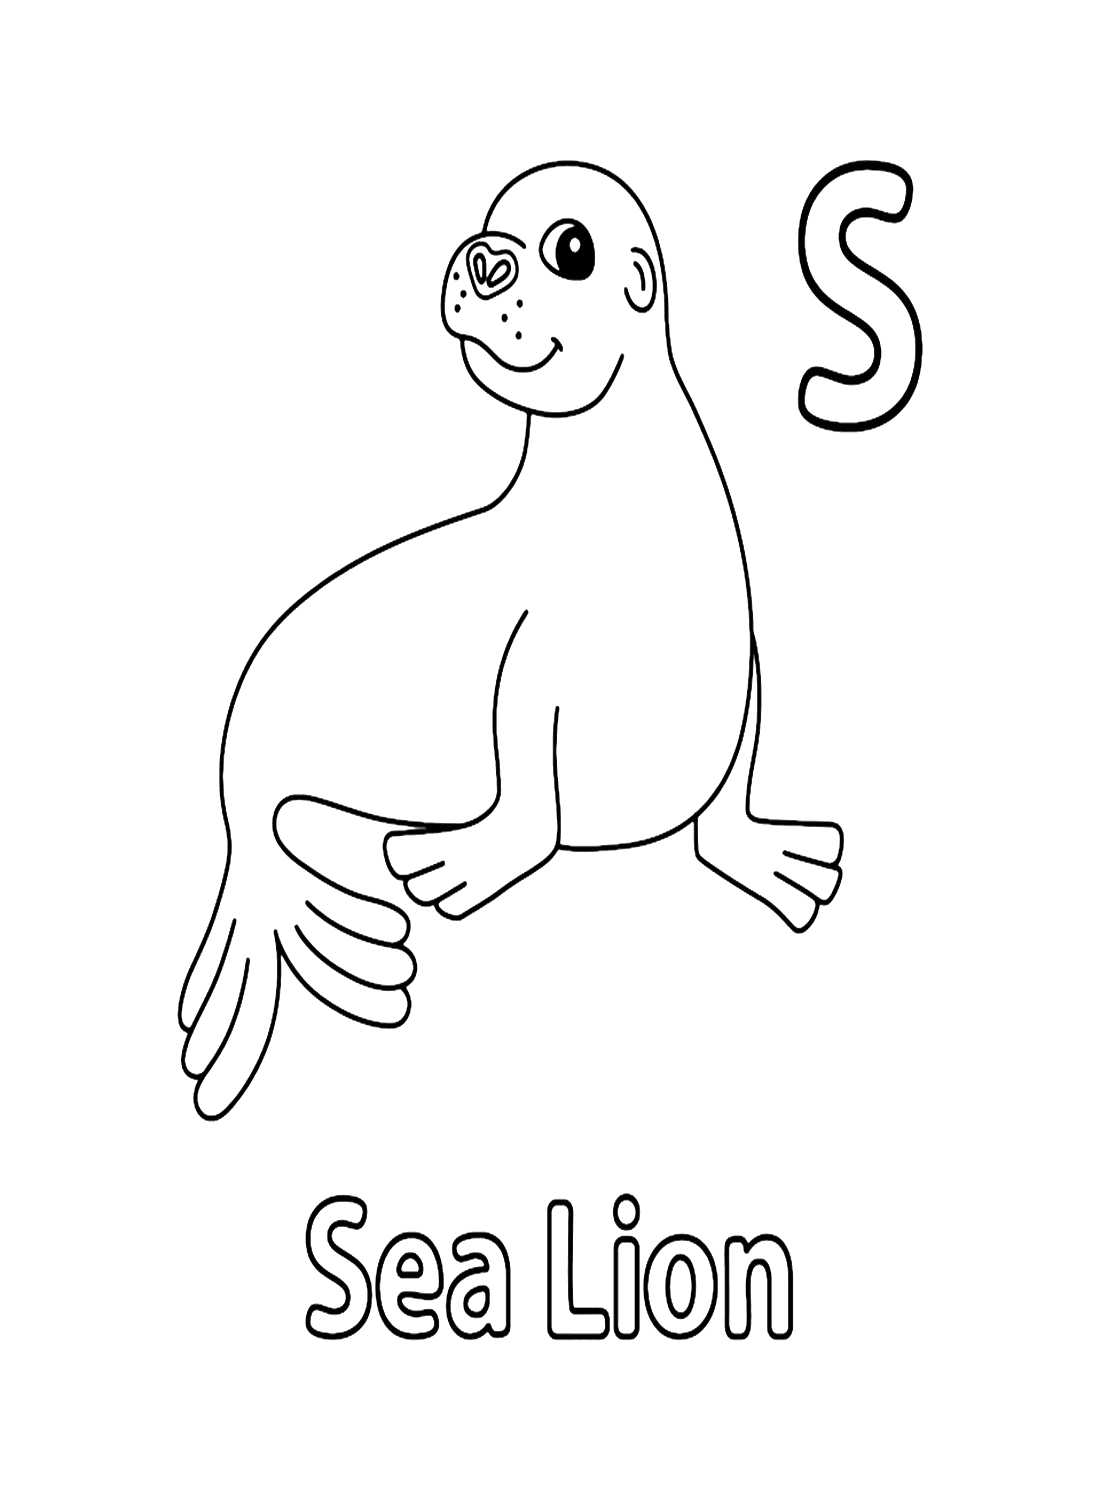 Lettre S pour l'otarie de Sea Lion